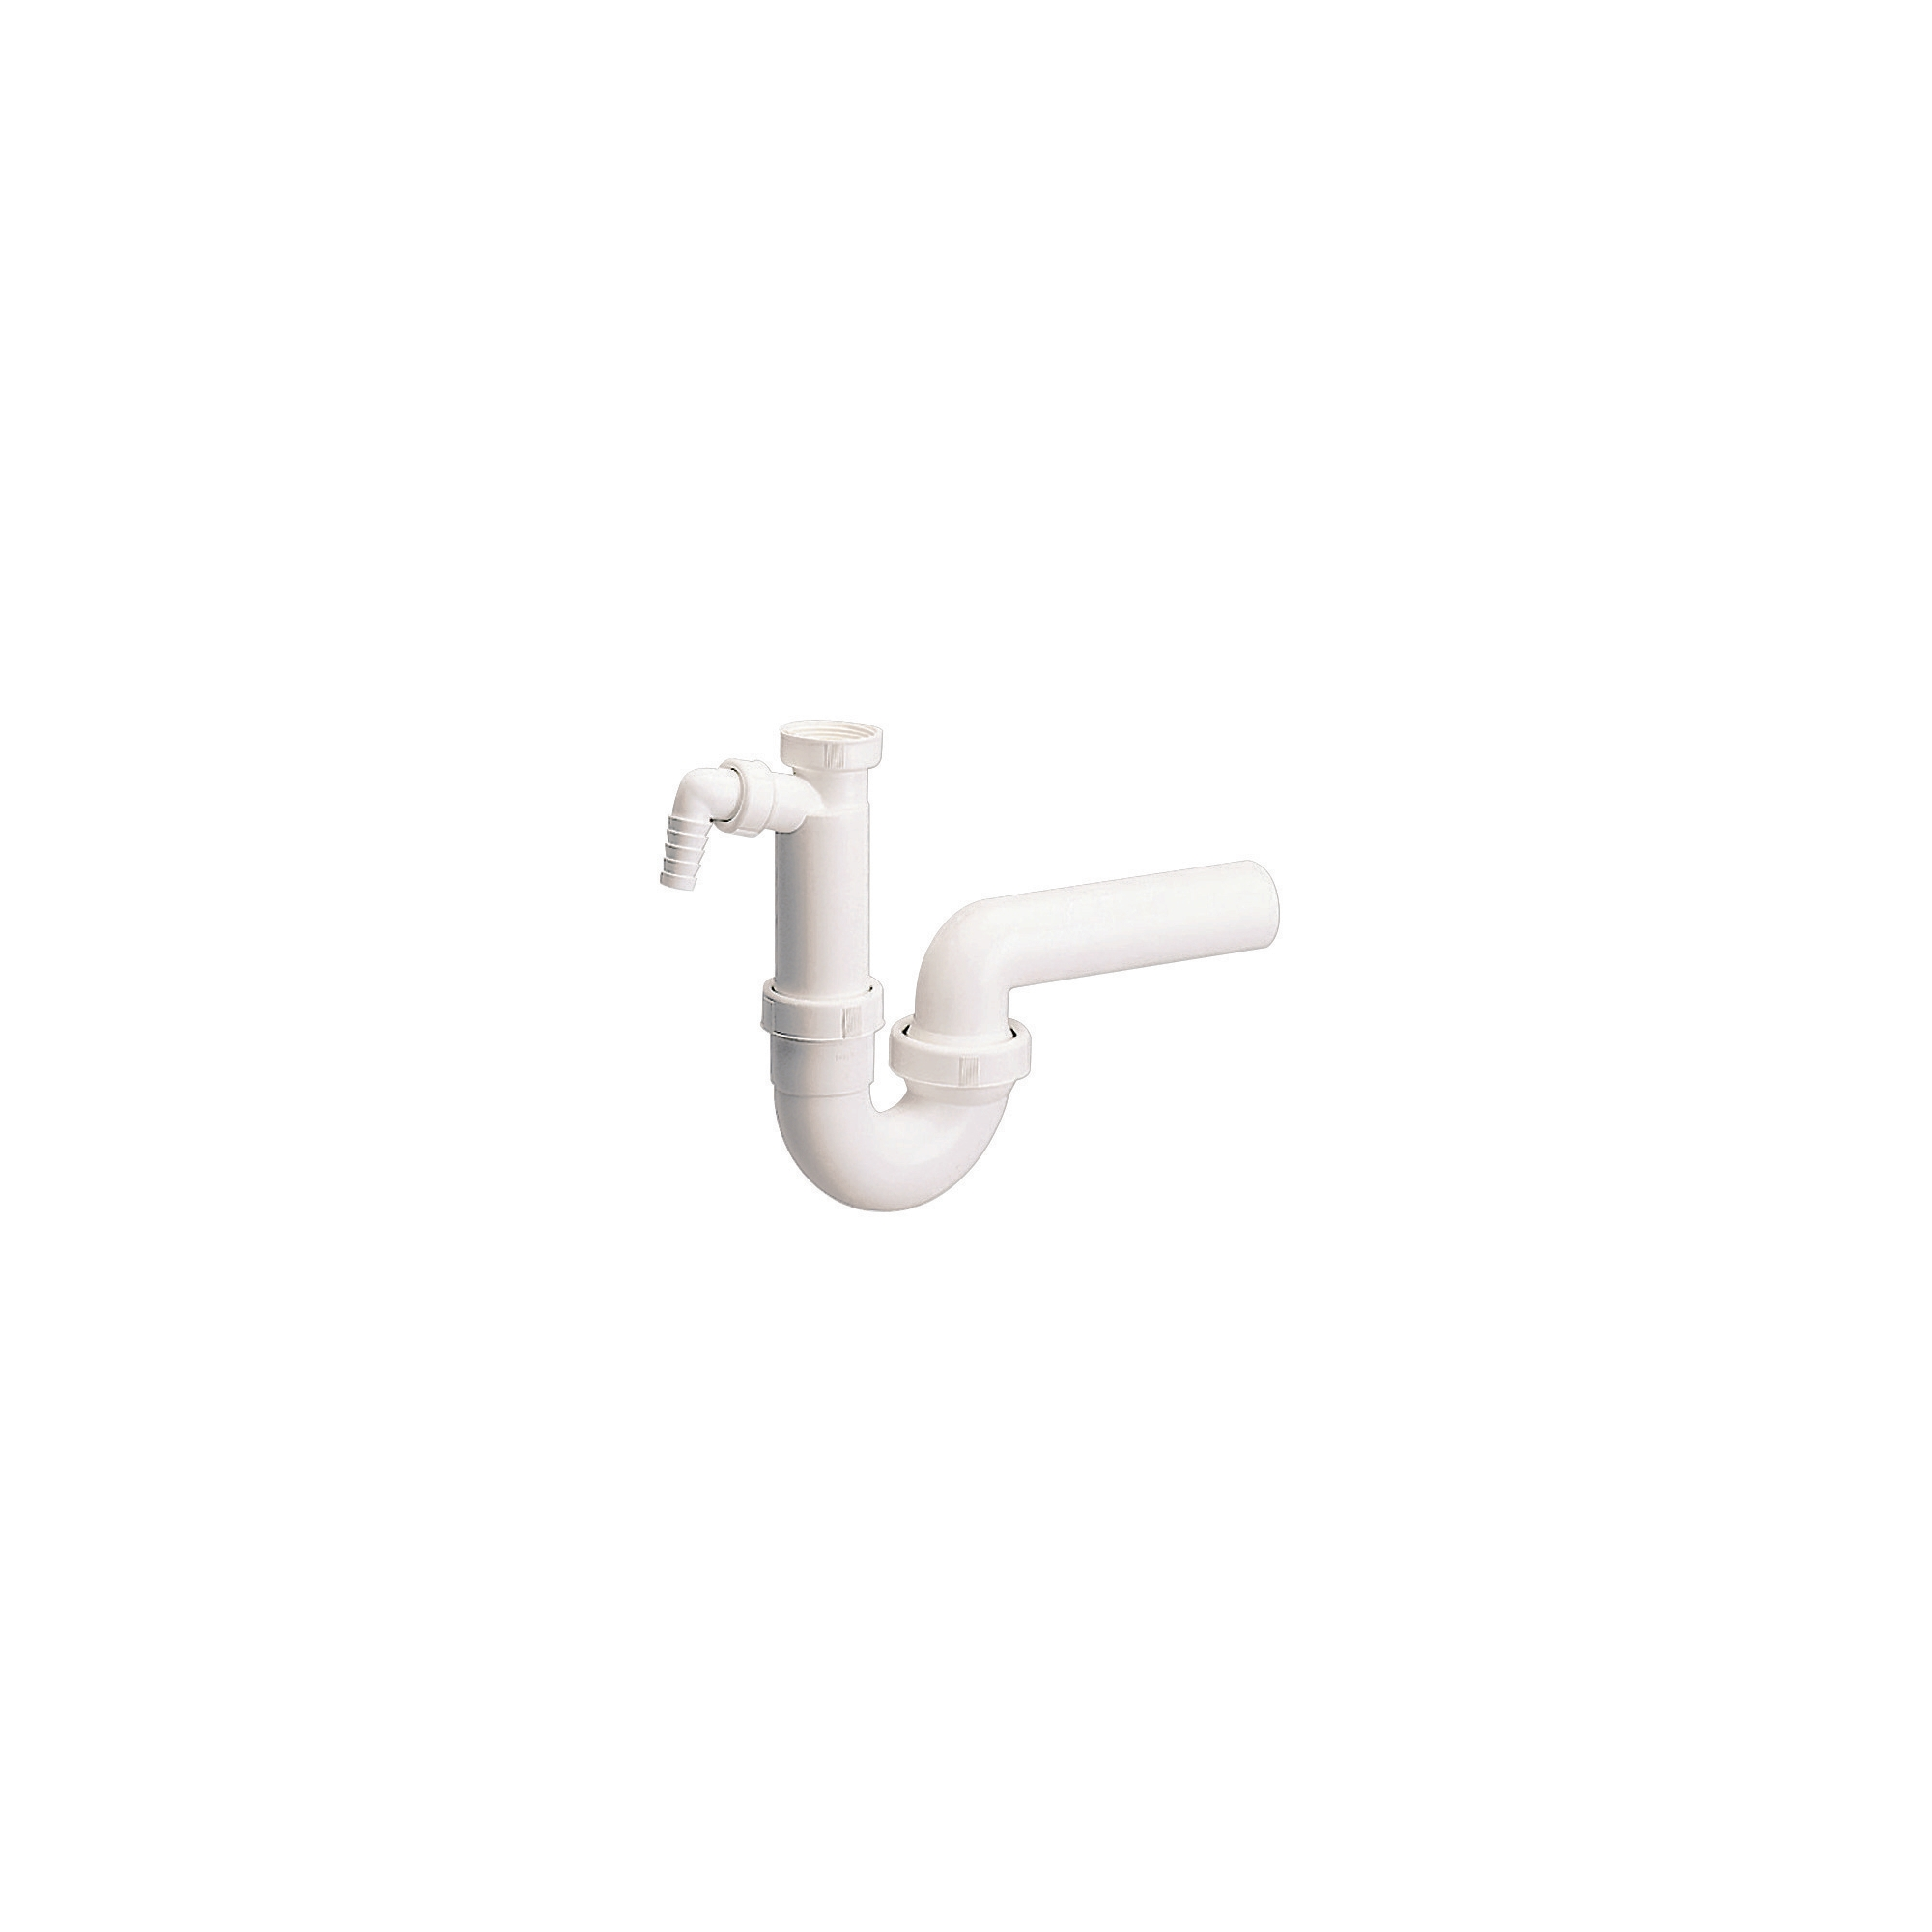 Dallmer Röhrengeruchsverschluss für Spülen 1 1/2 Zoll x 50 mm, weiß + product picture